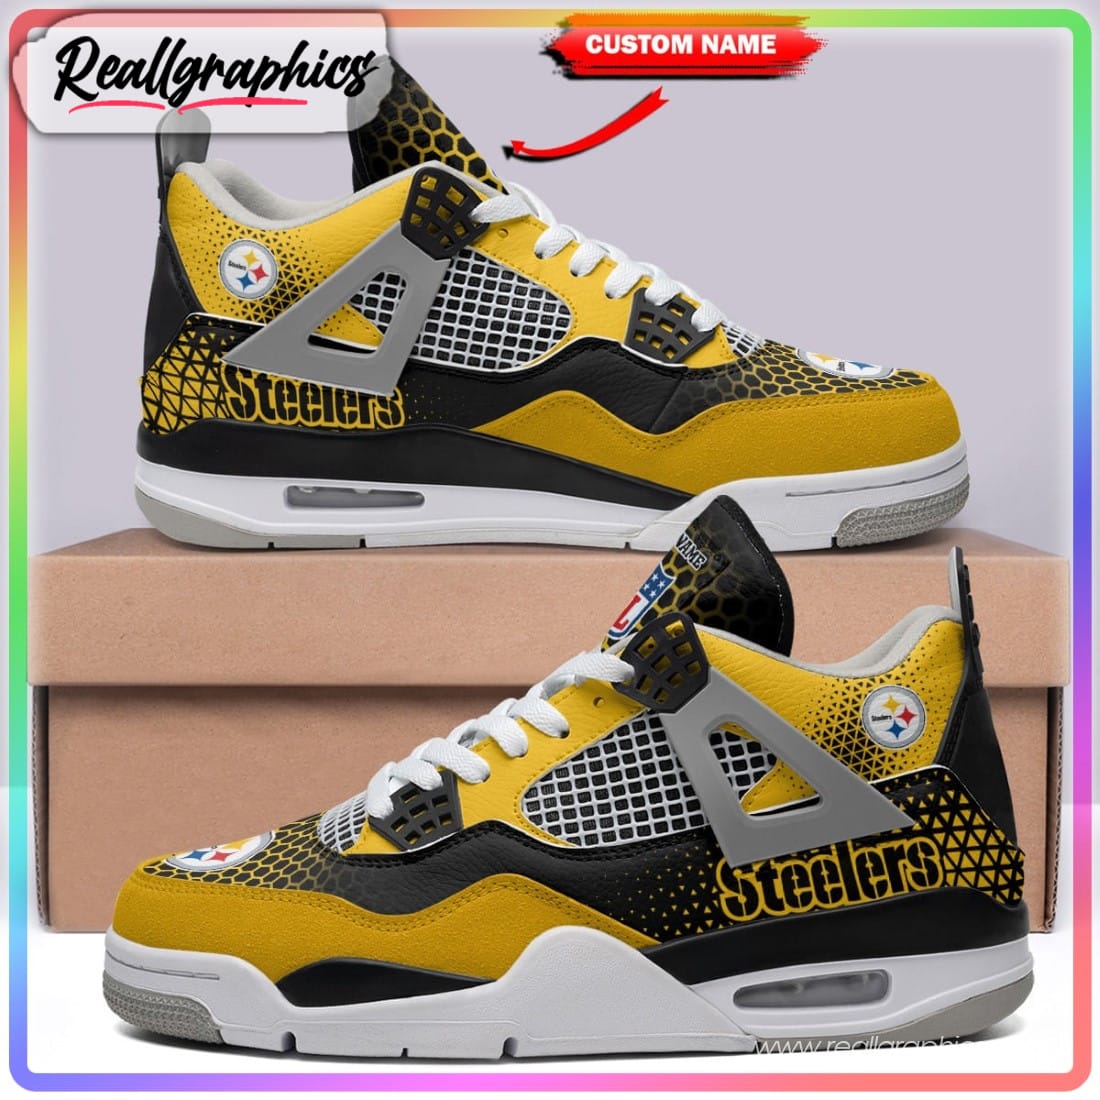 Custom NFL Pittsburgh Steelers Black Rock Design Air Jordan 4 Sneaker -  Sporty Threads